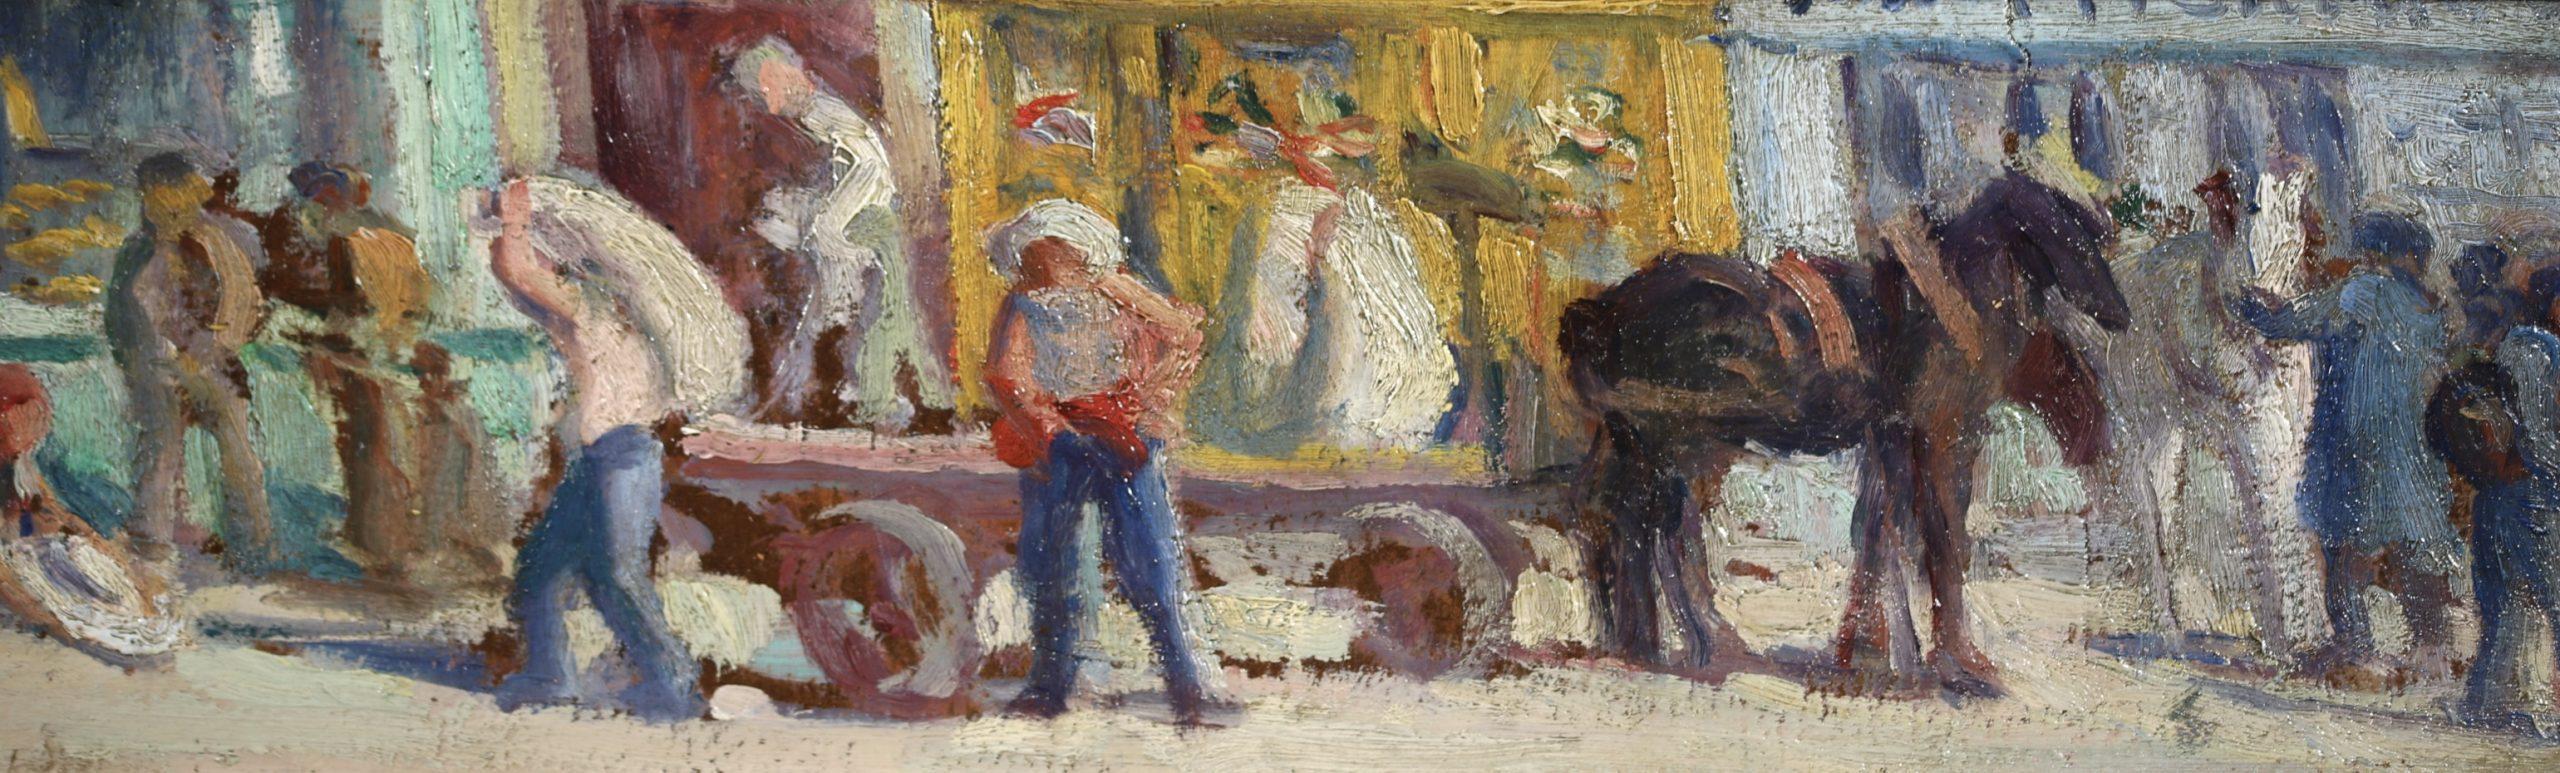 Rue de Paris - Impressionist Landscape Oil Painting by Maximillien Luce For Sale 3